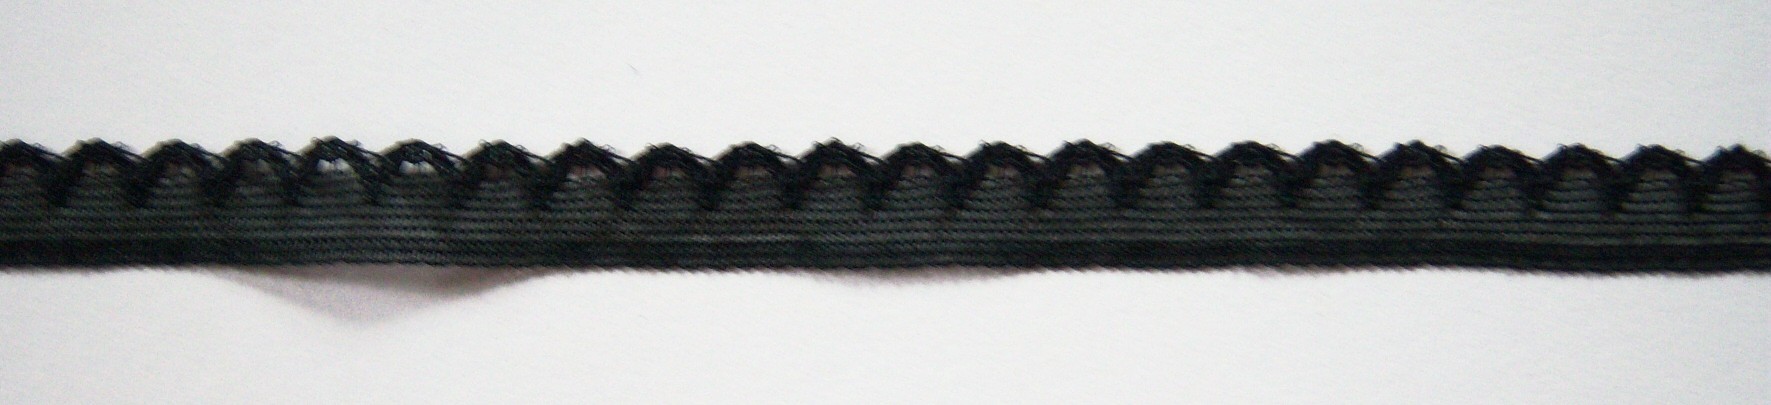 Black 5/16" Nylon Lace